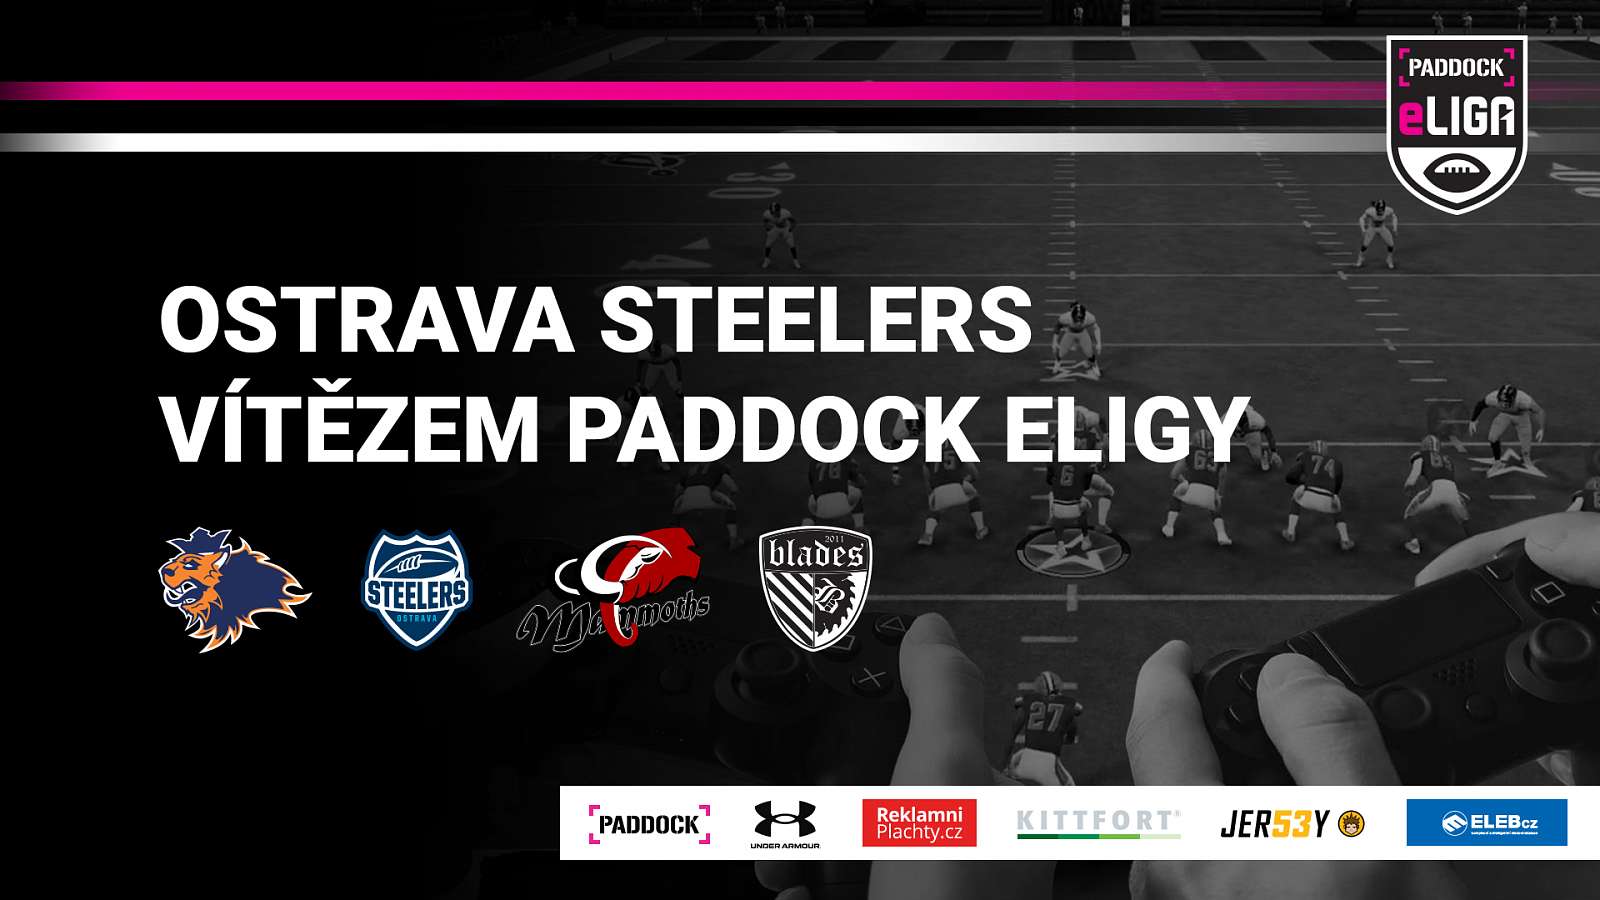 Ostrava Steelers vítězem prvního ročníku Paddock eligy